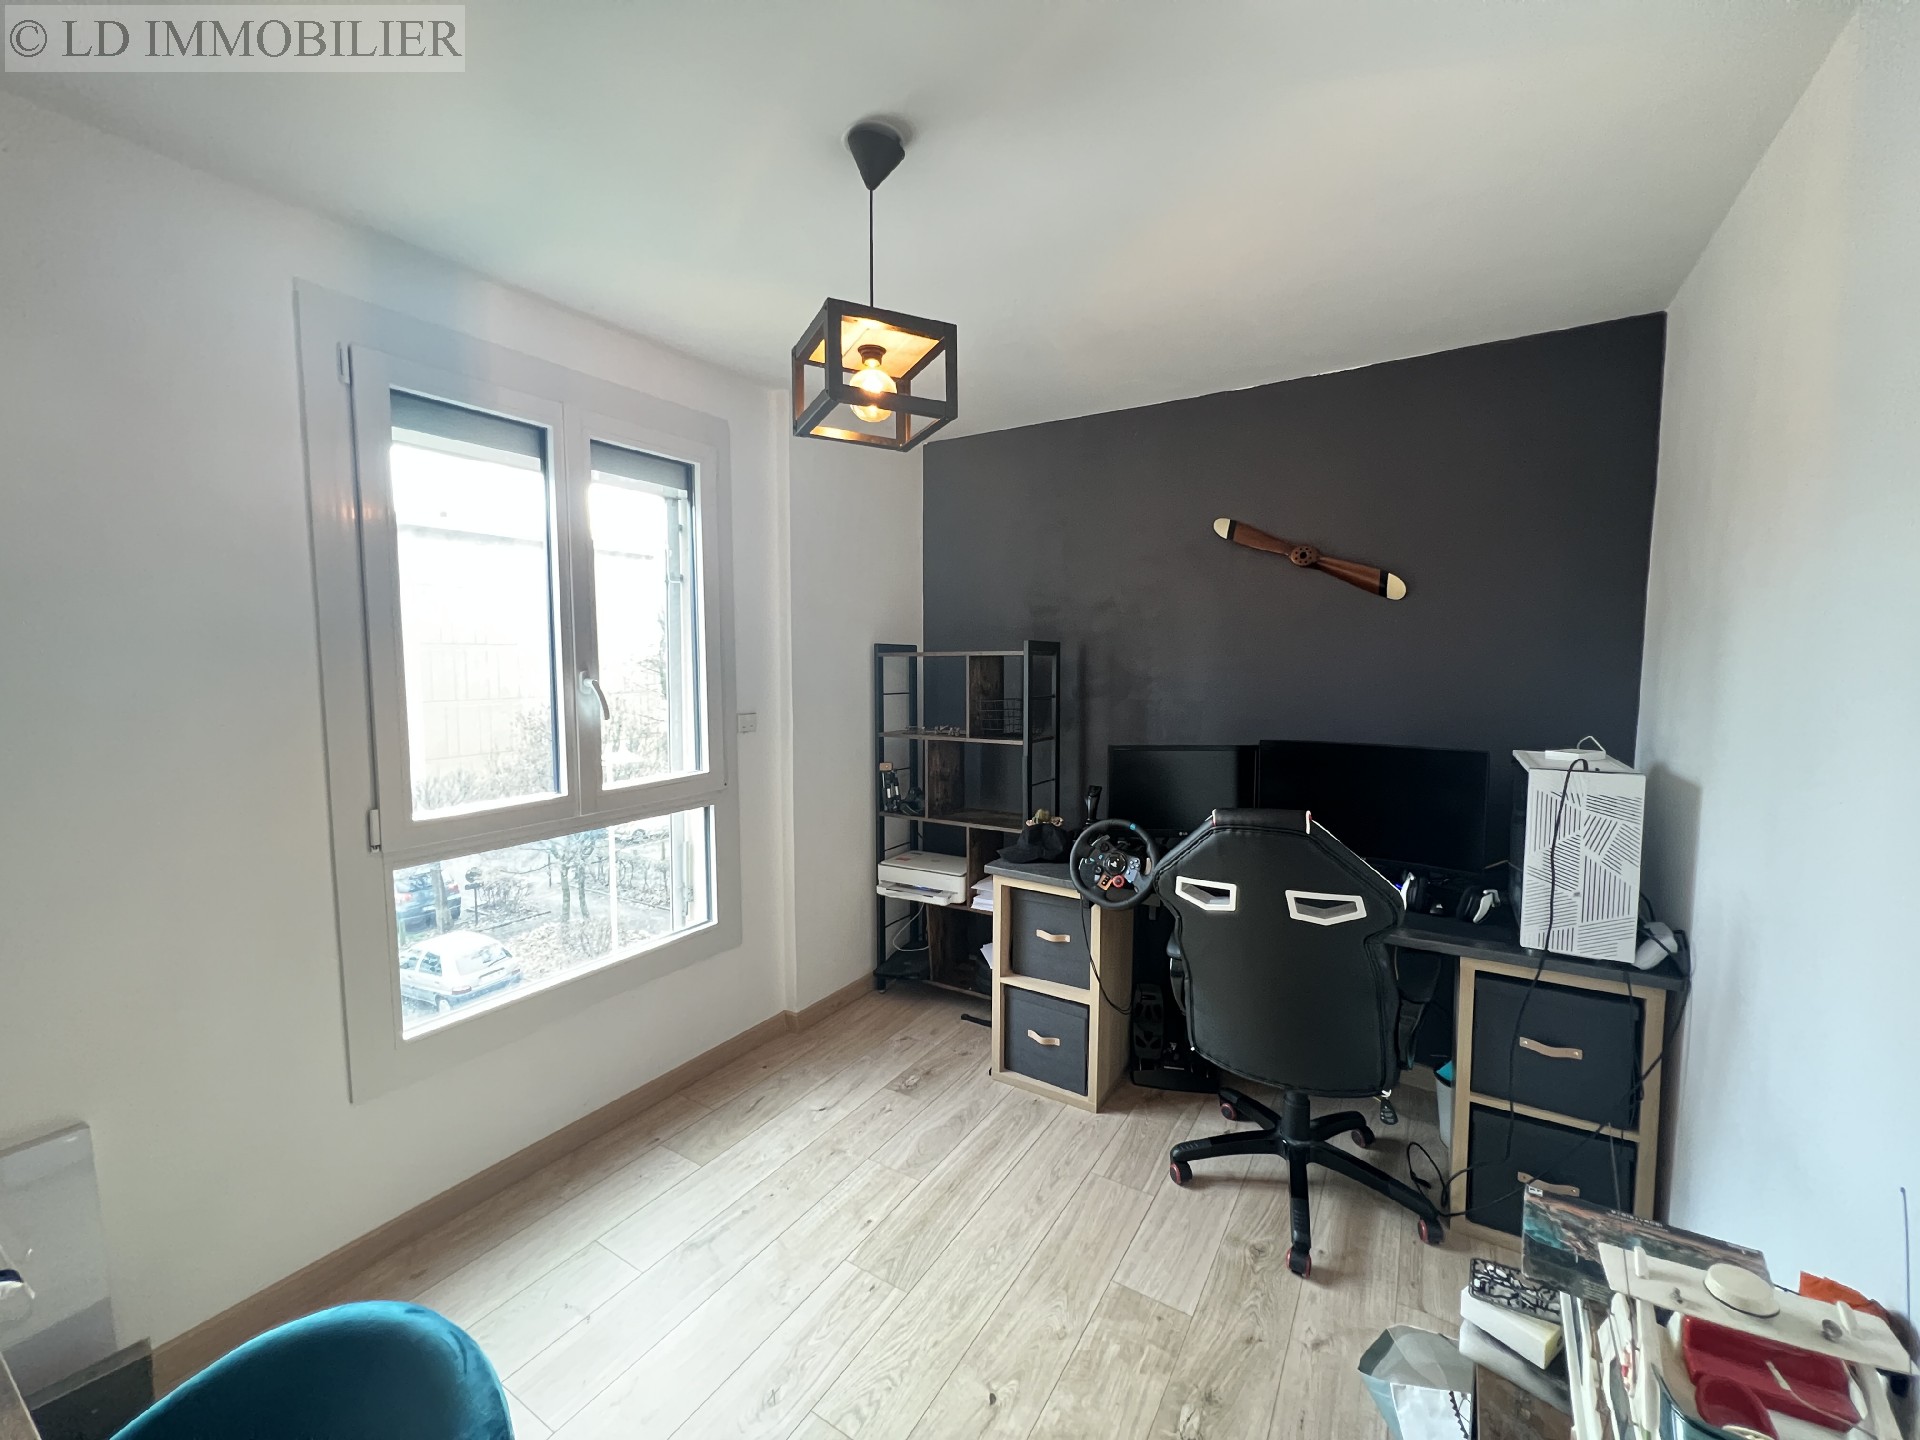 Vente appartement - BARBY 100,44 m², 5 pièces